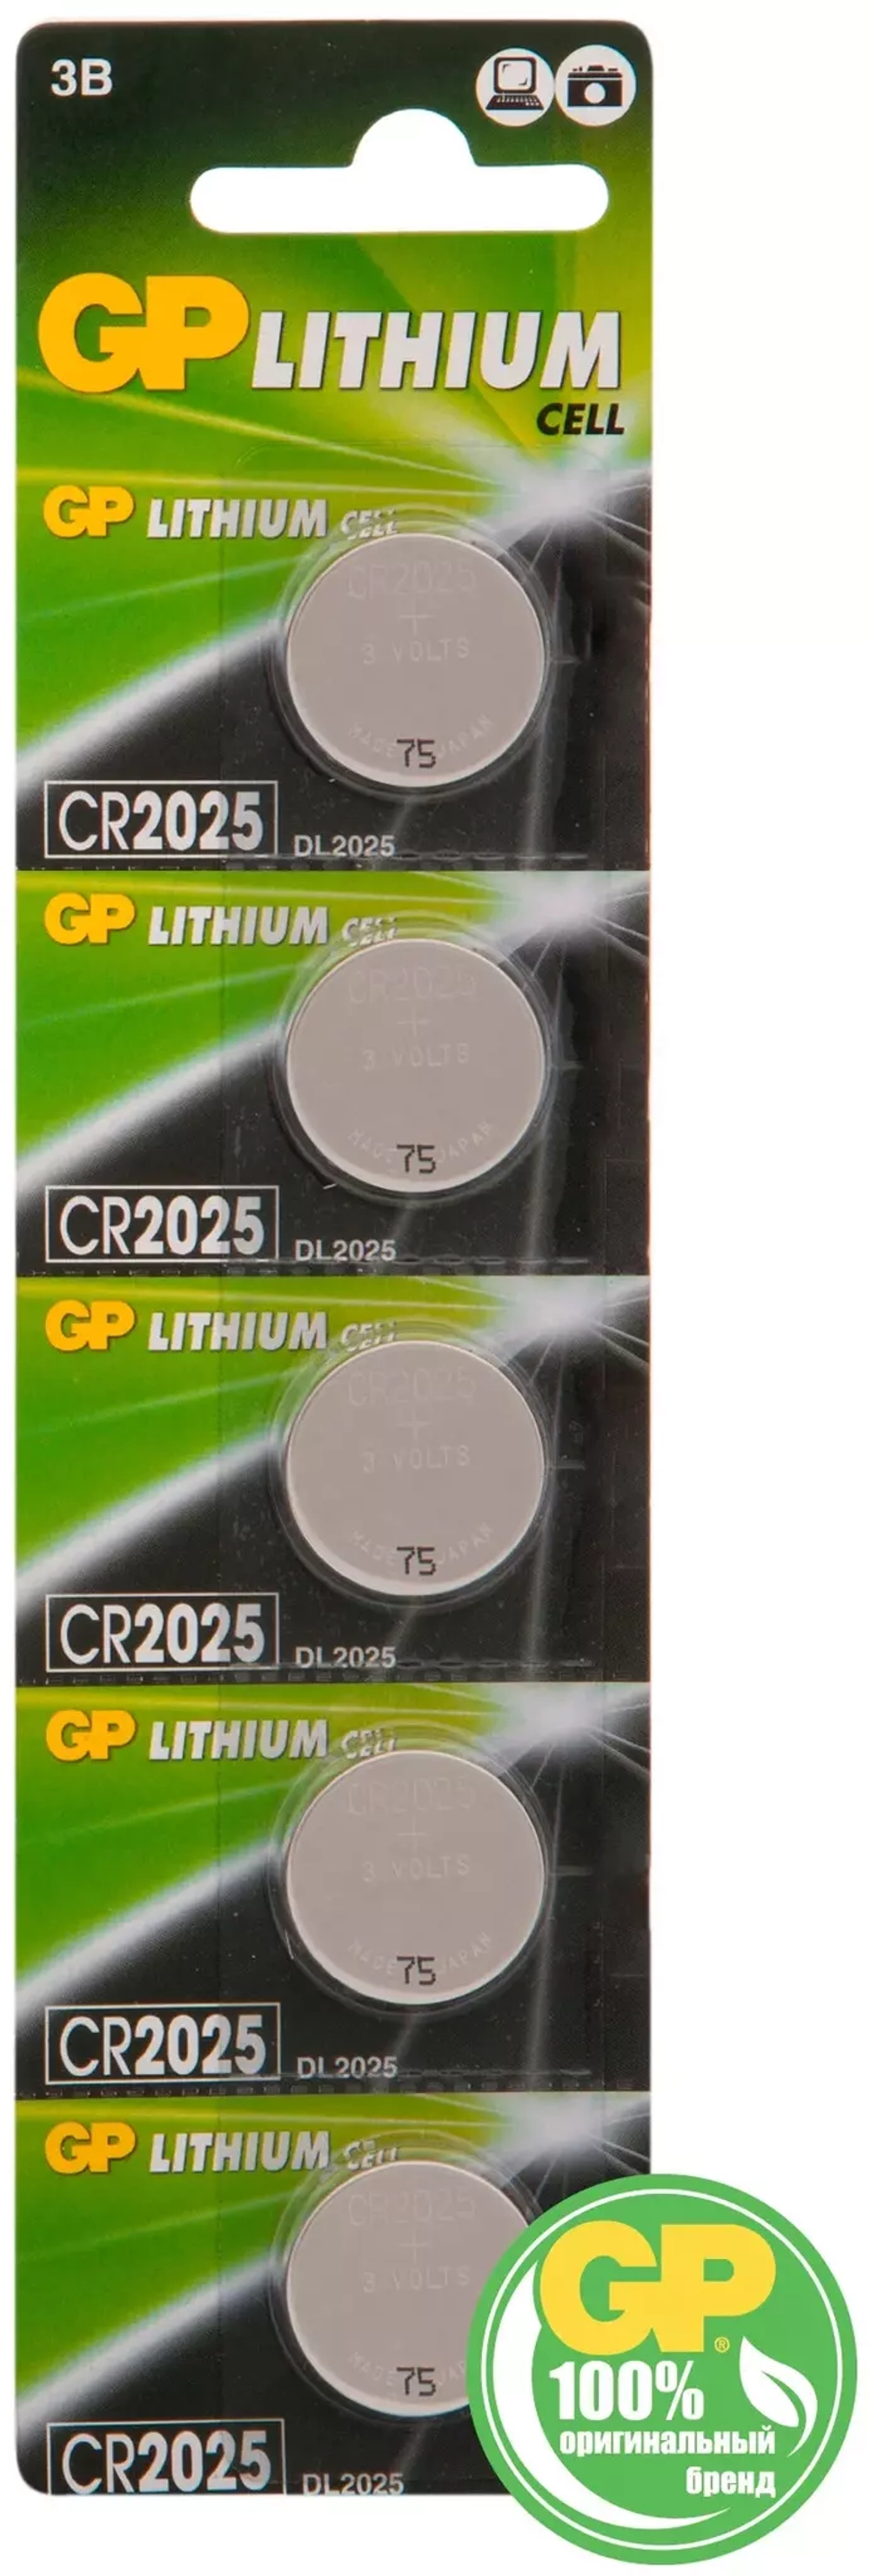 Батарейка CR2025 GP